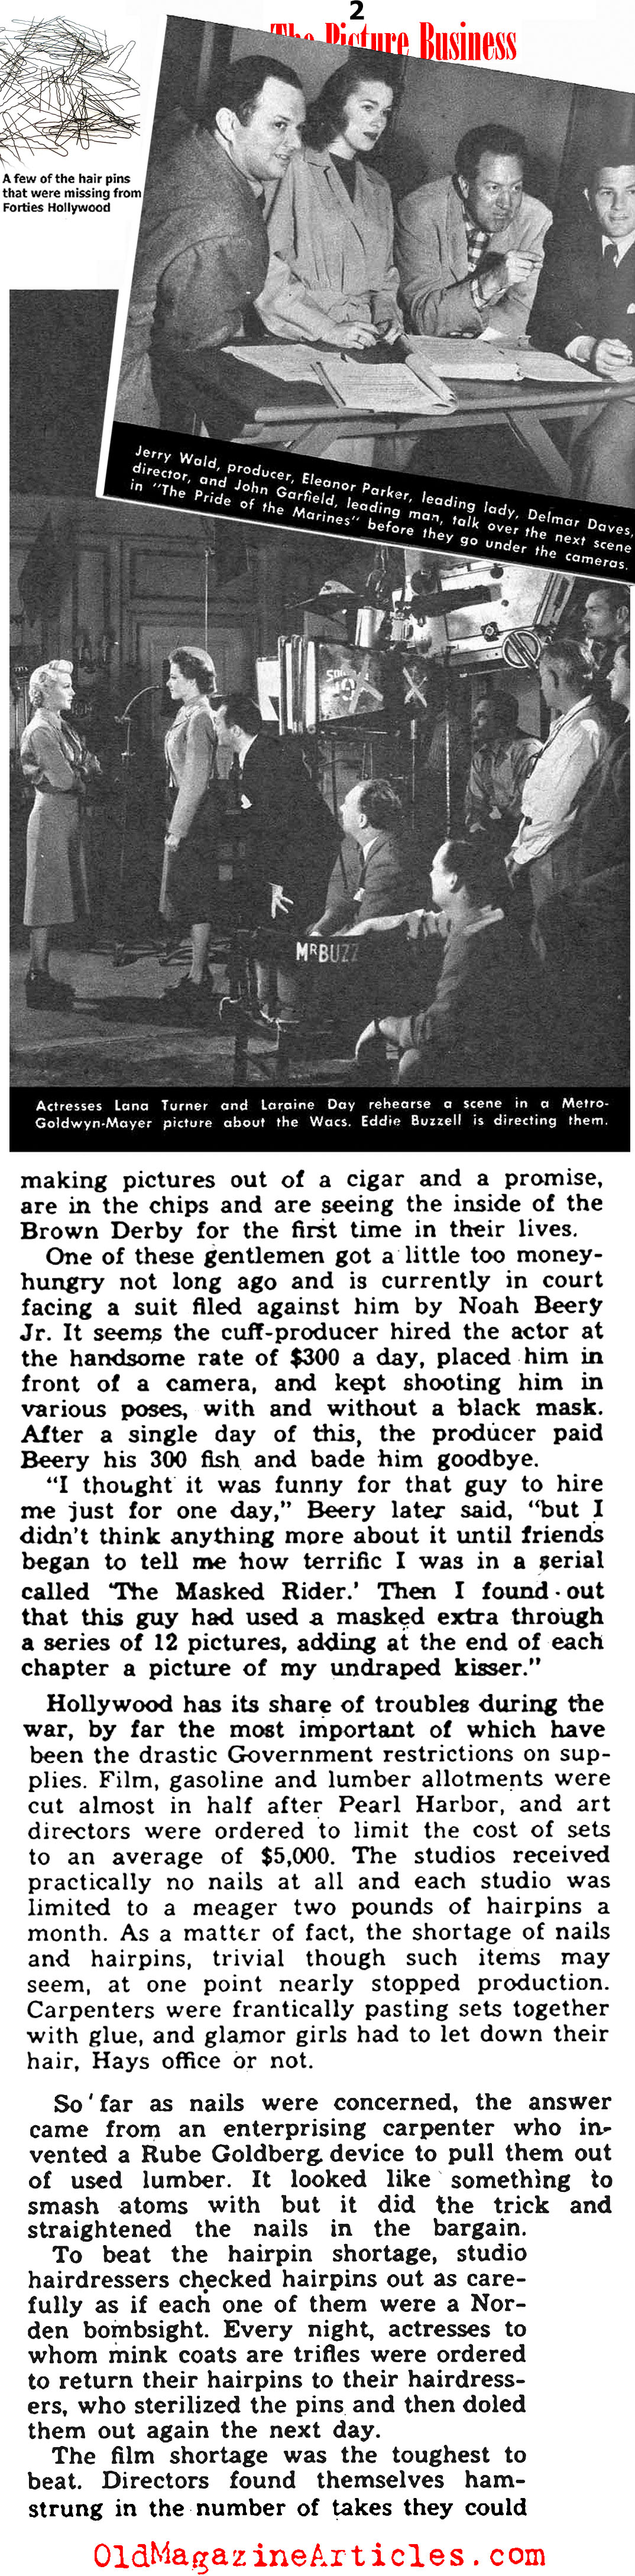 1945 Hollywood (Yank Magazine, 1945)